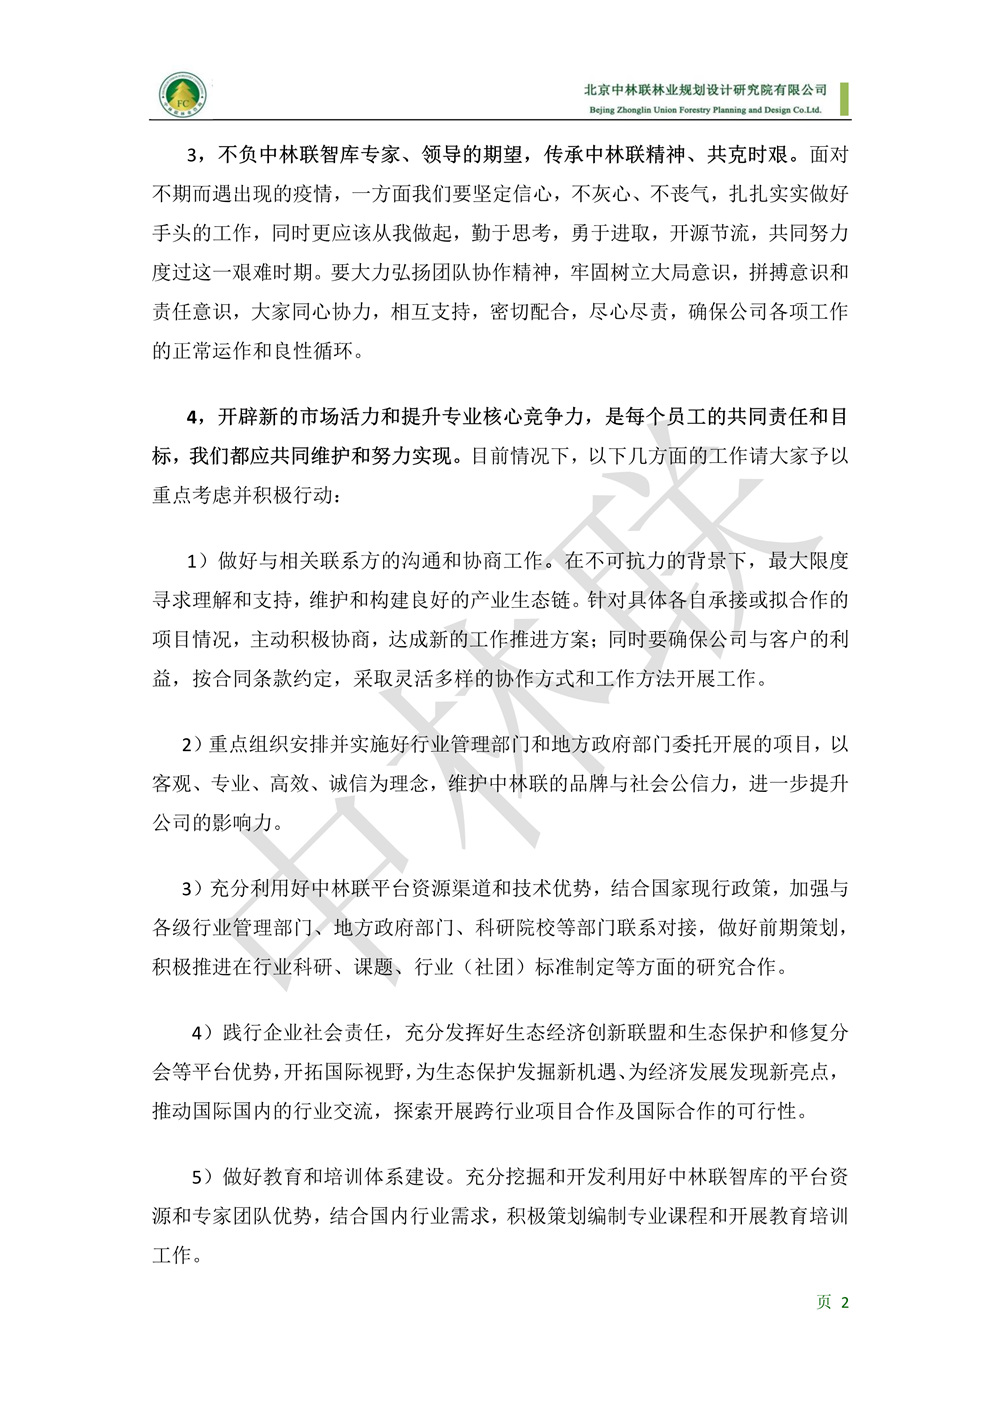 致中林联全体员工的一封信2020210--对外公众号版(1)_2.jpg